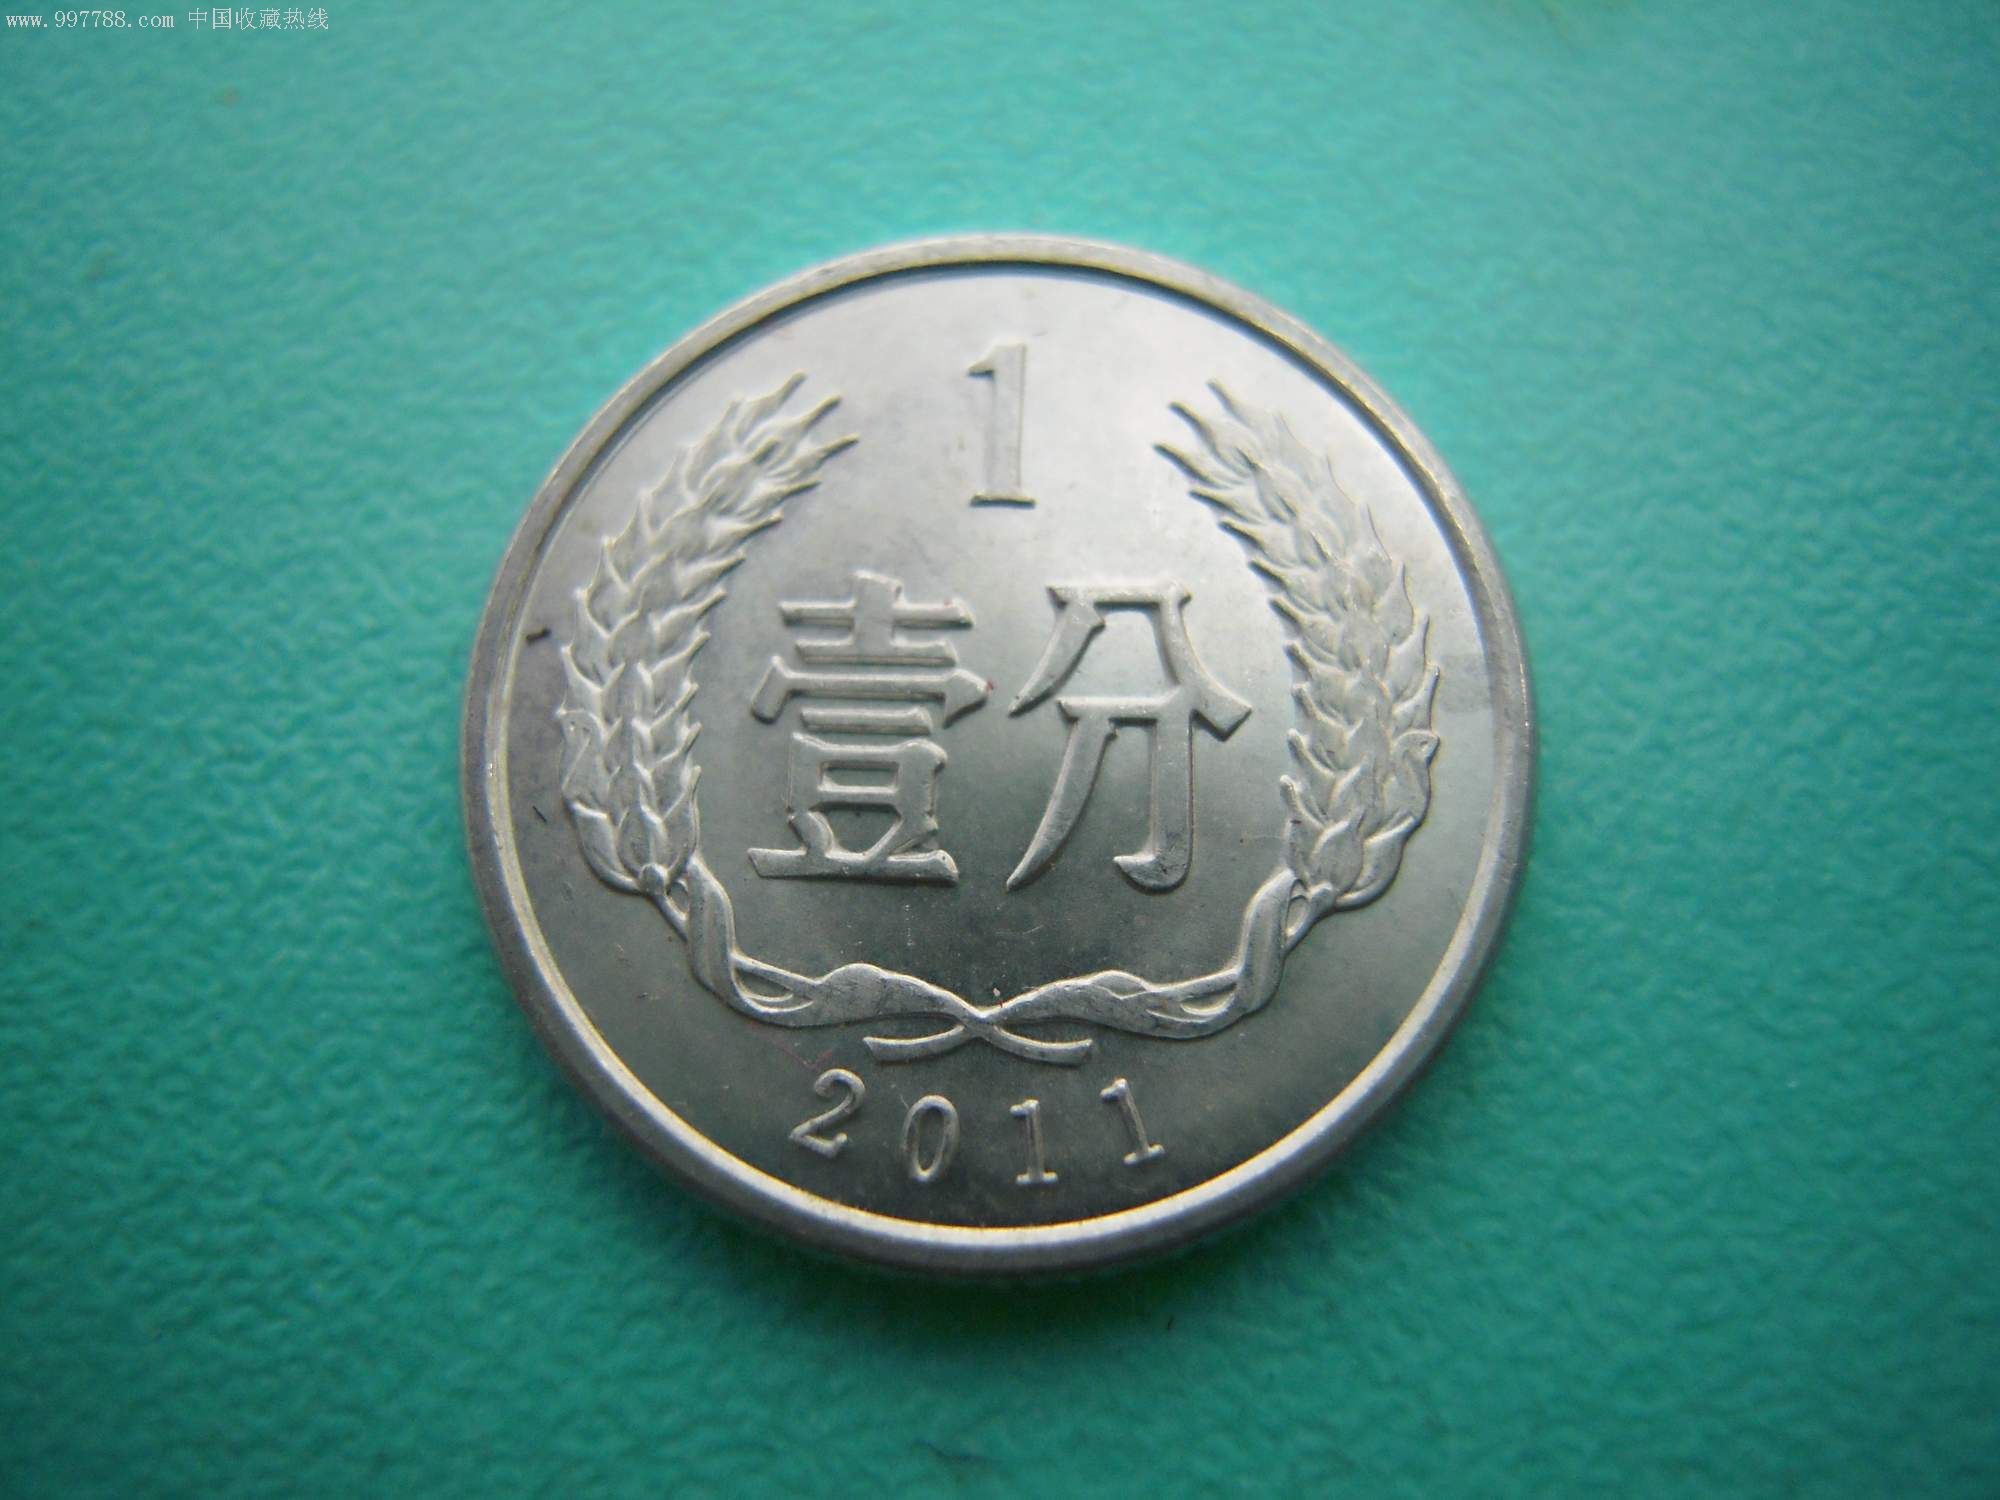 2011年1分硬币